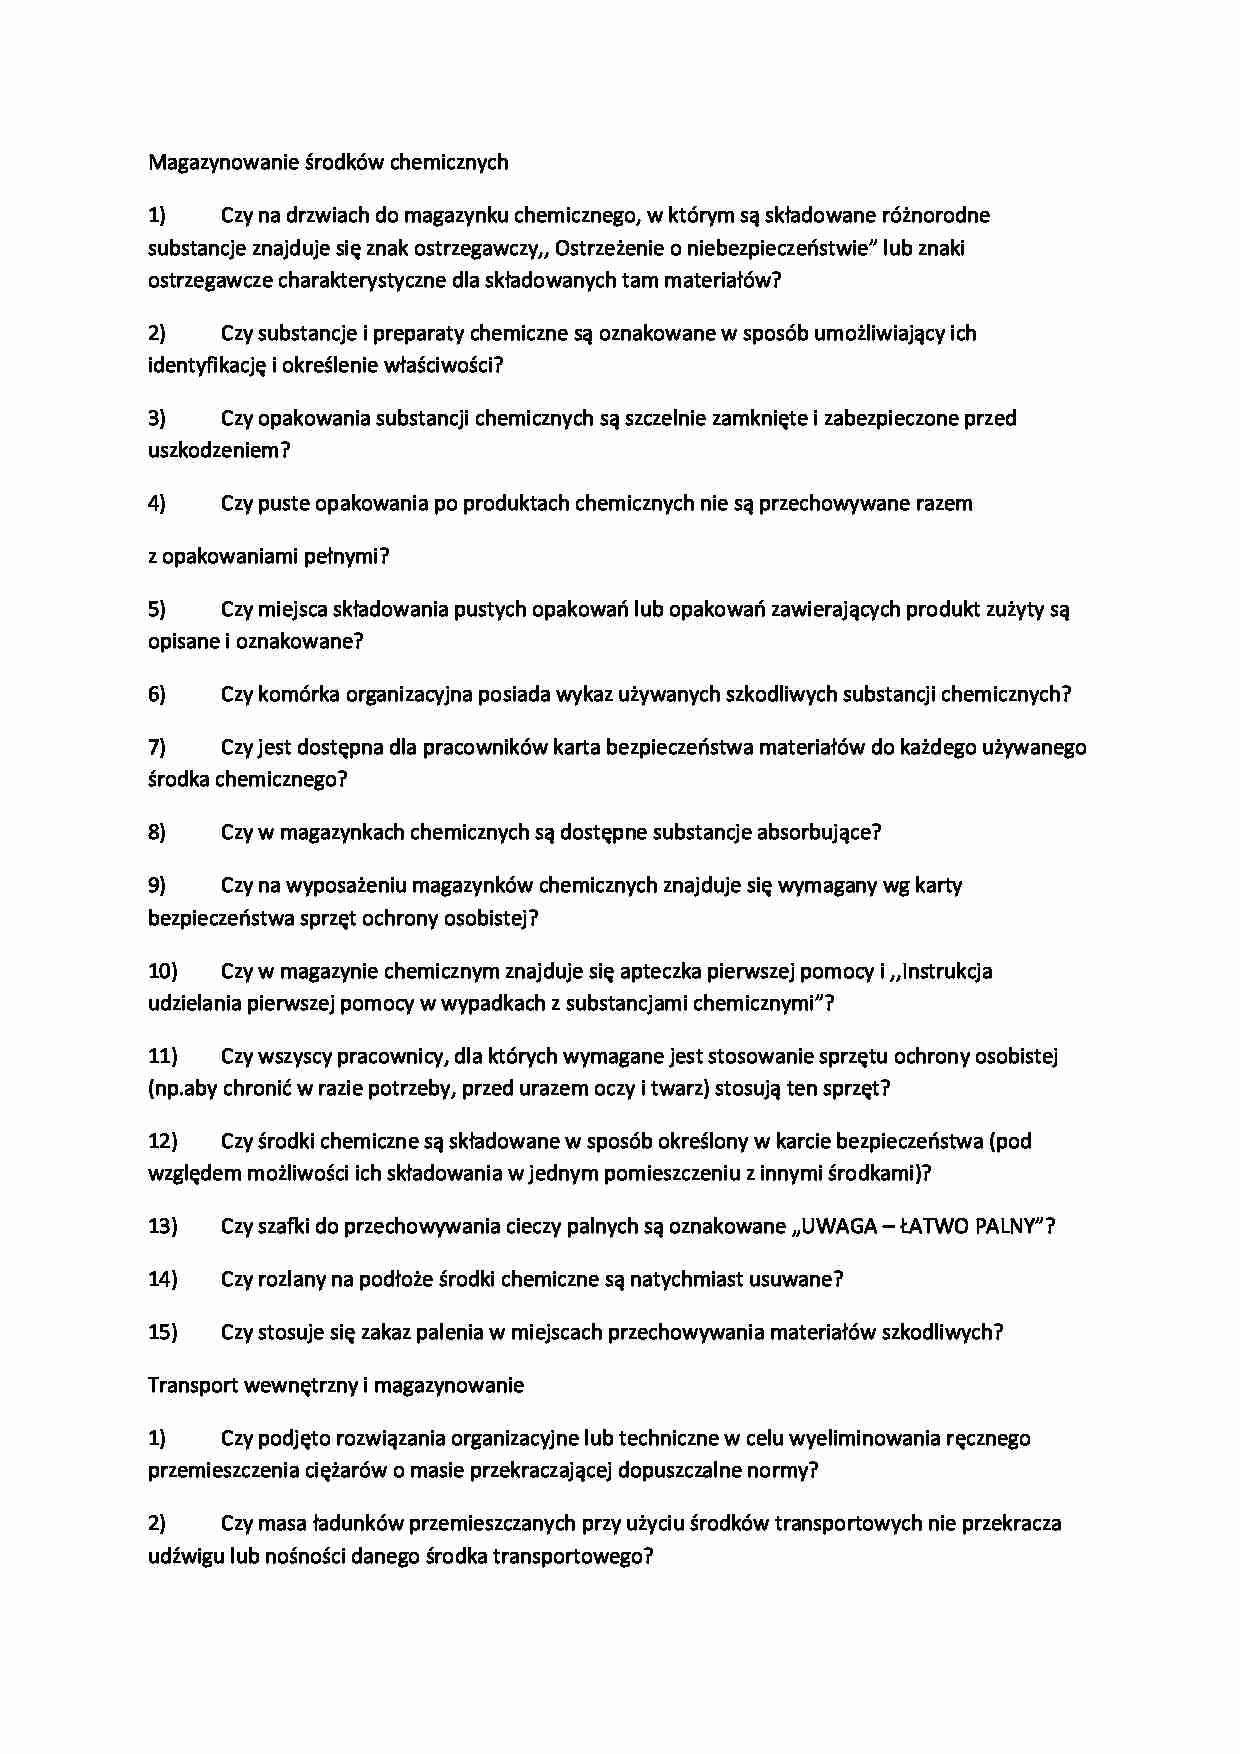  Magazynowanie środków chemicznych i transport wewnętrzny-pytania - strona 1